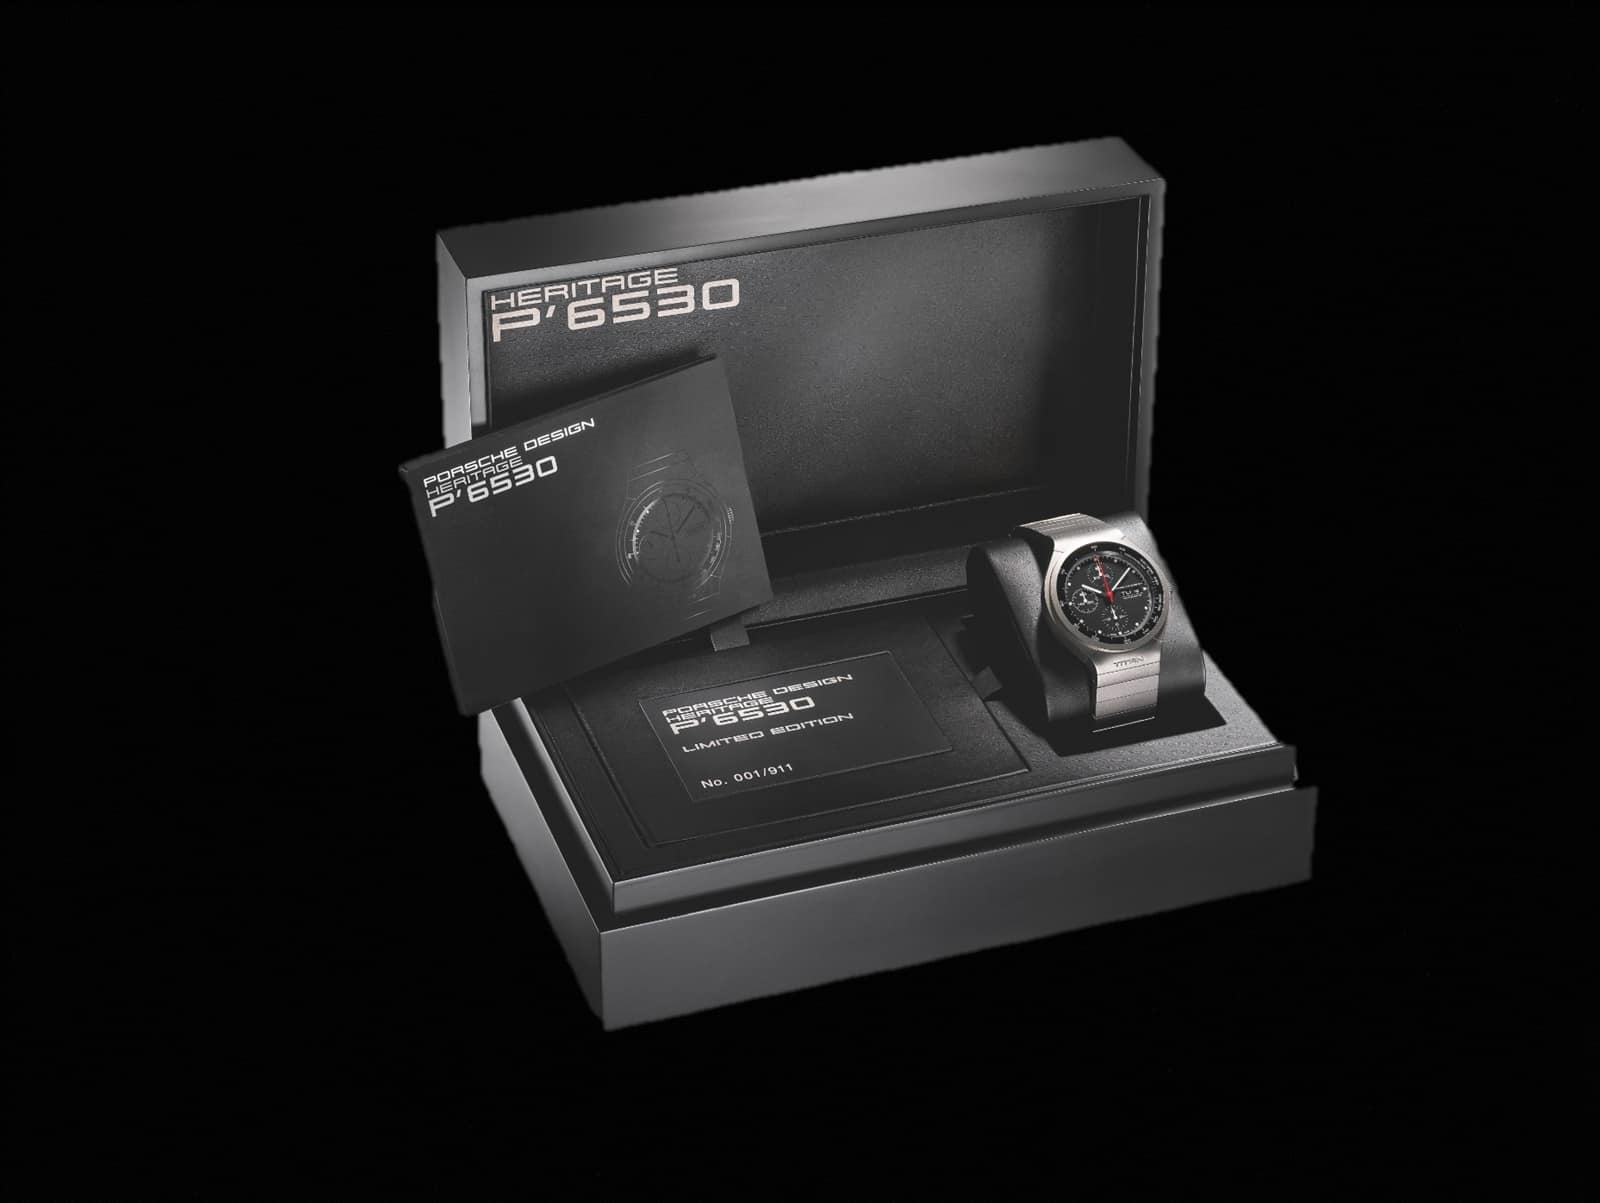 Porsche Design Titan Chronograph P6530 Eterna 2010